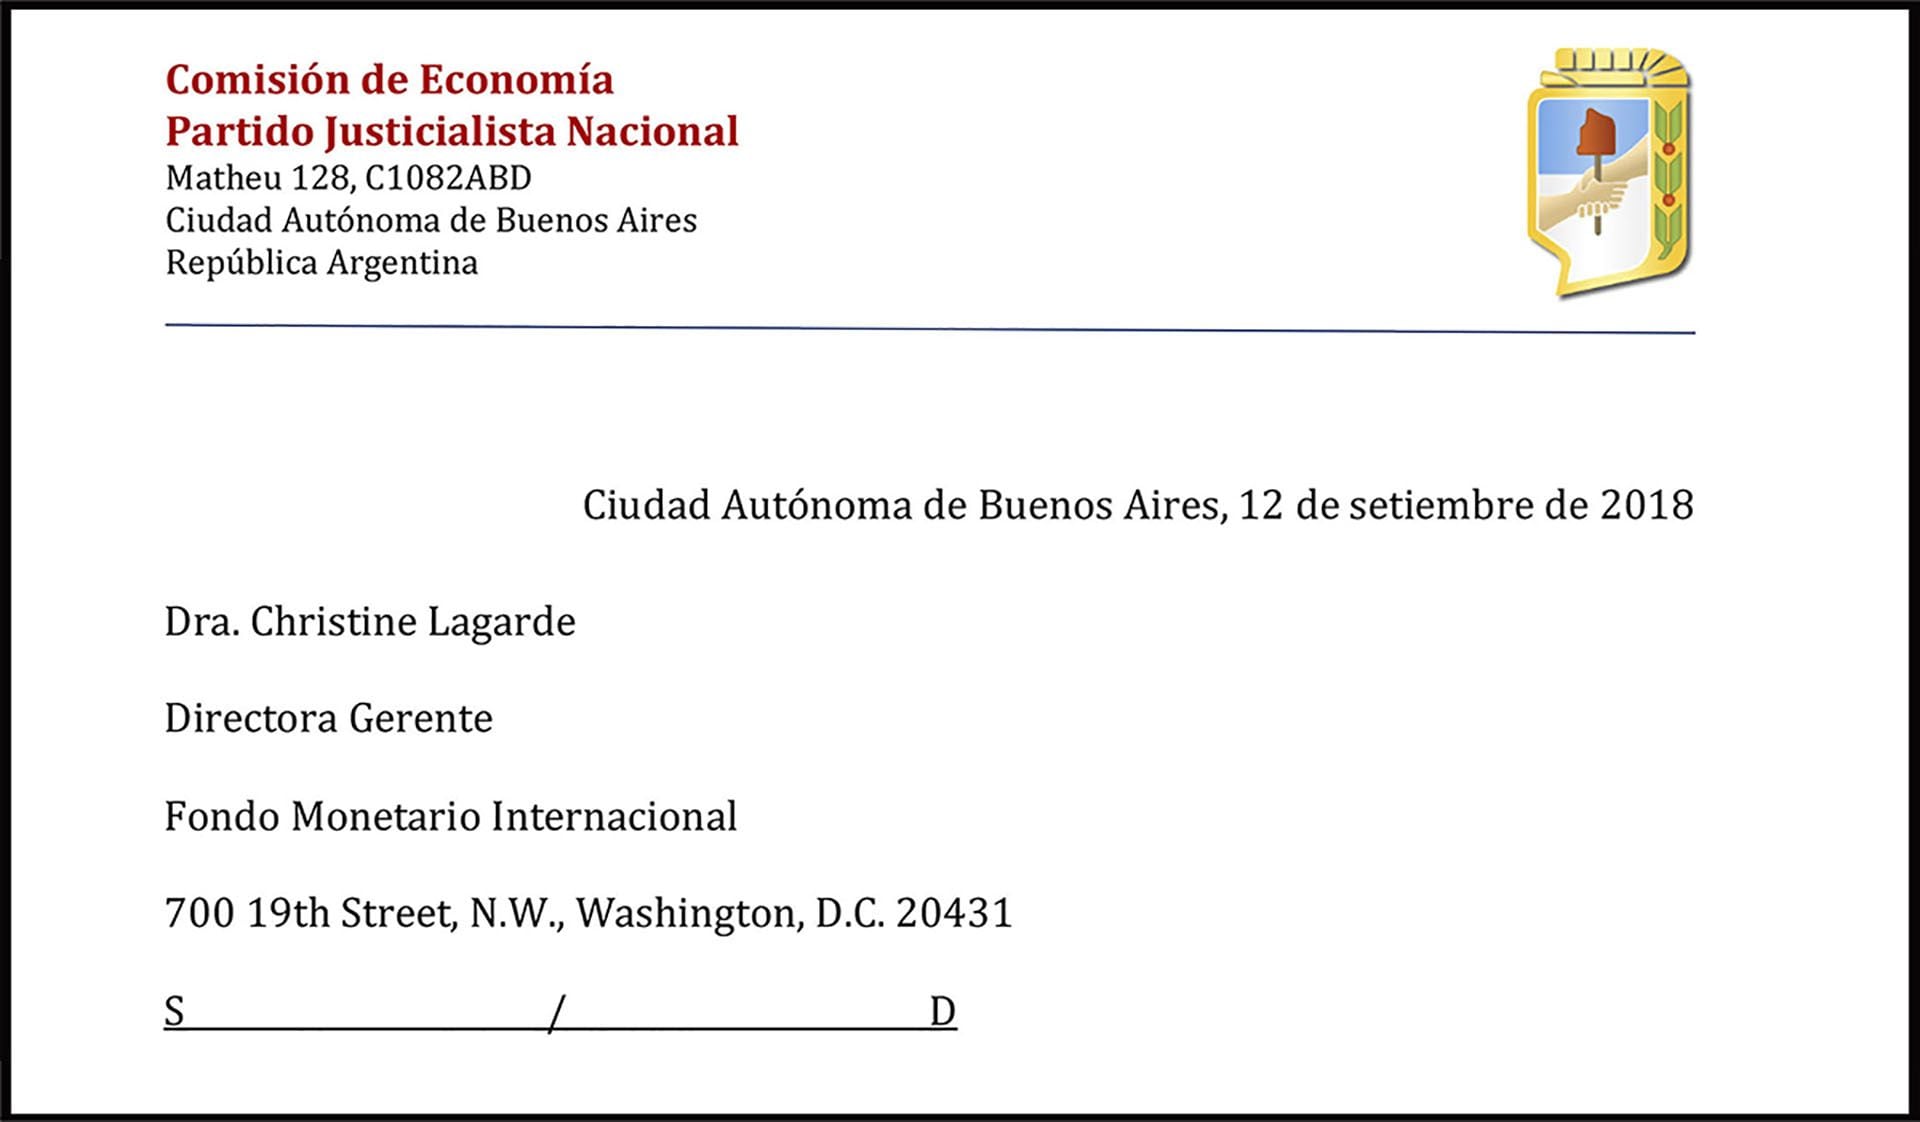 La carta al FMI firmada por Guillermo Moreno, en carácter de responsable de la Comisión de Economía del Partido Justicialista Nacional.